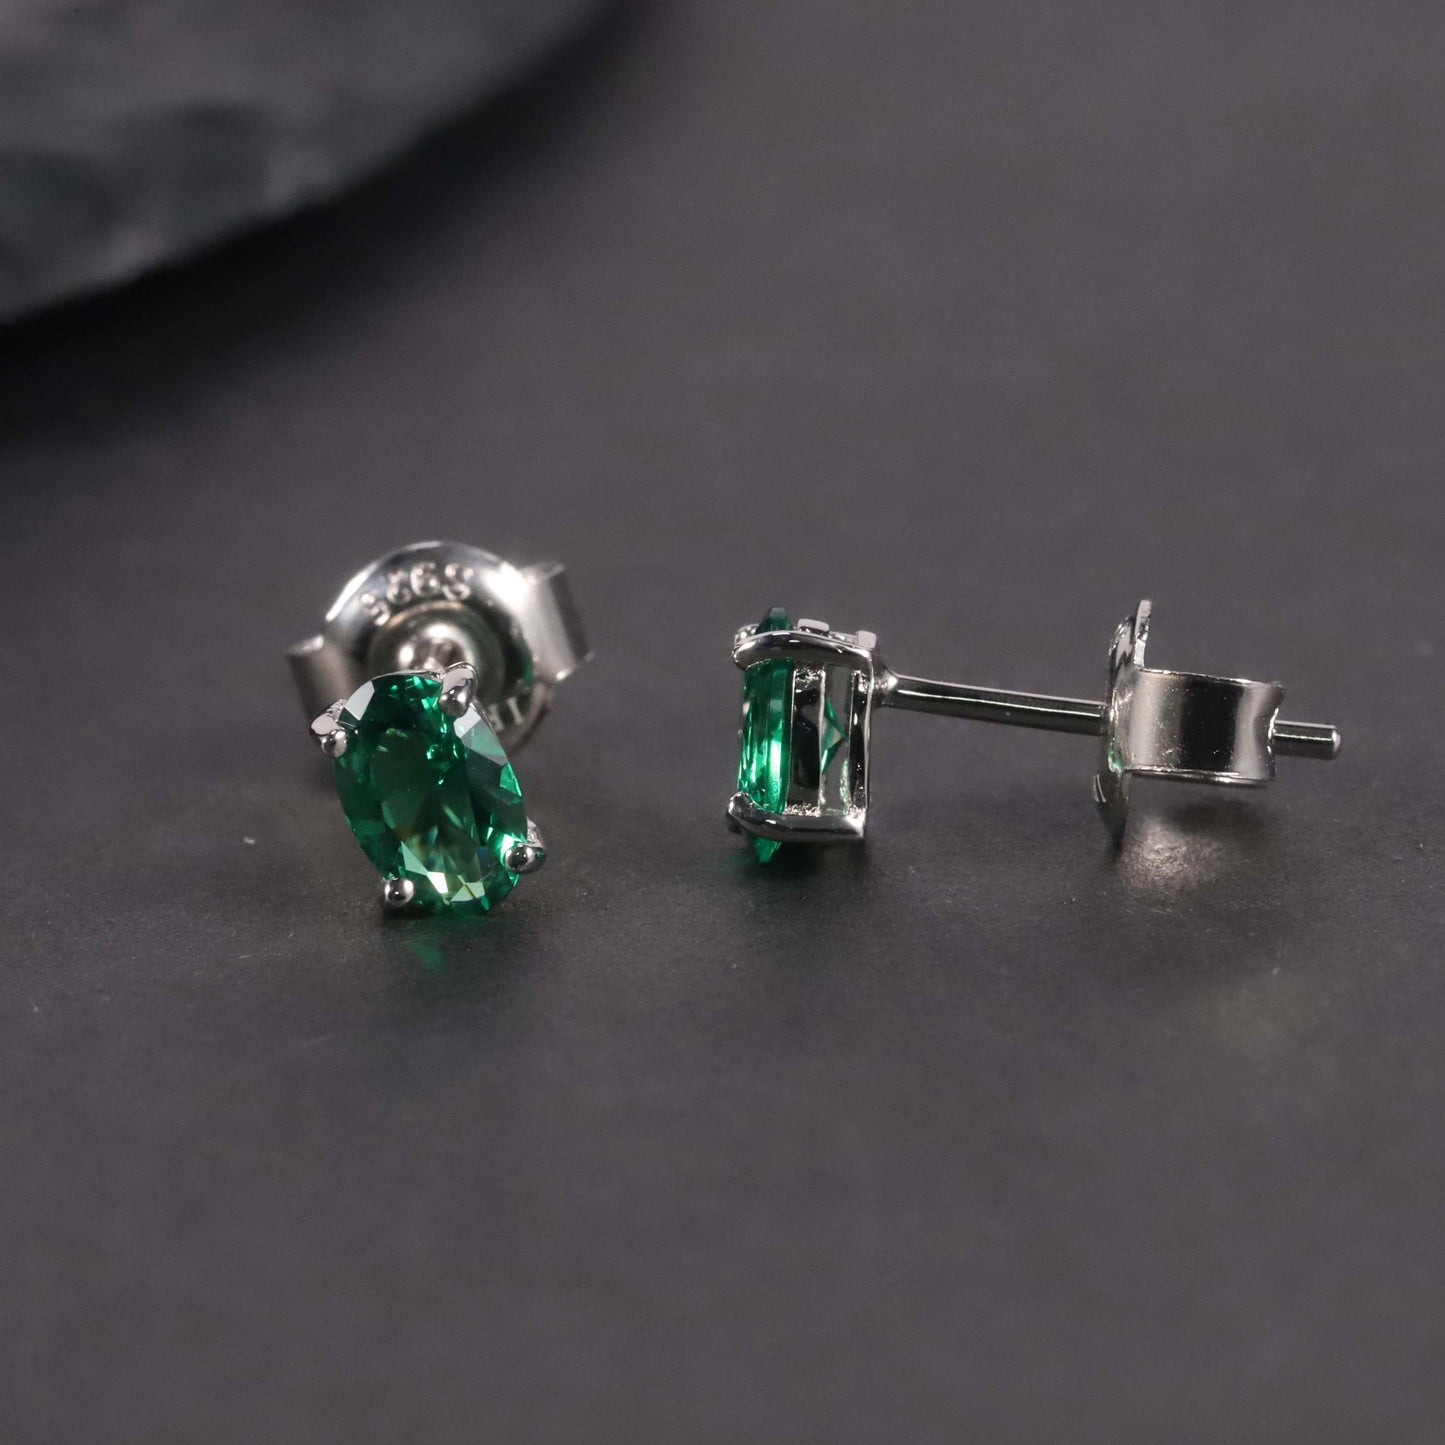 Oval Cut Stud Earrings in Sterling Silver -  Emerald